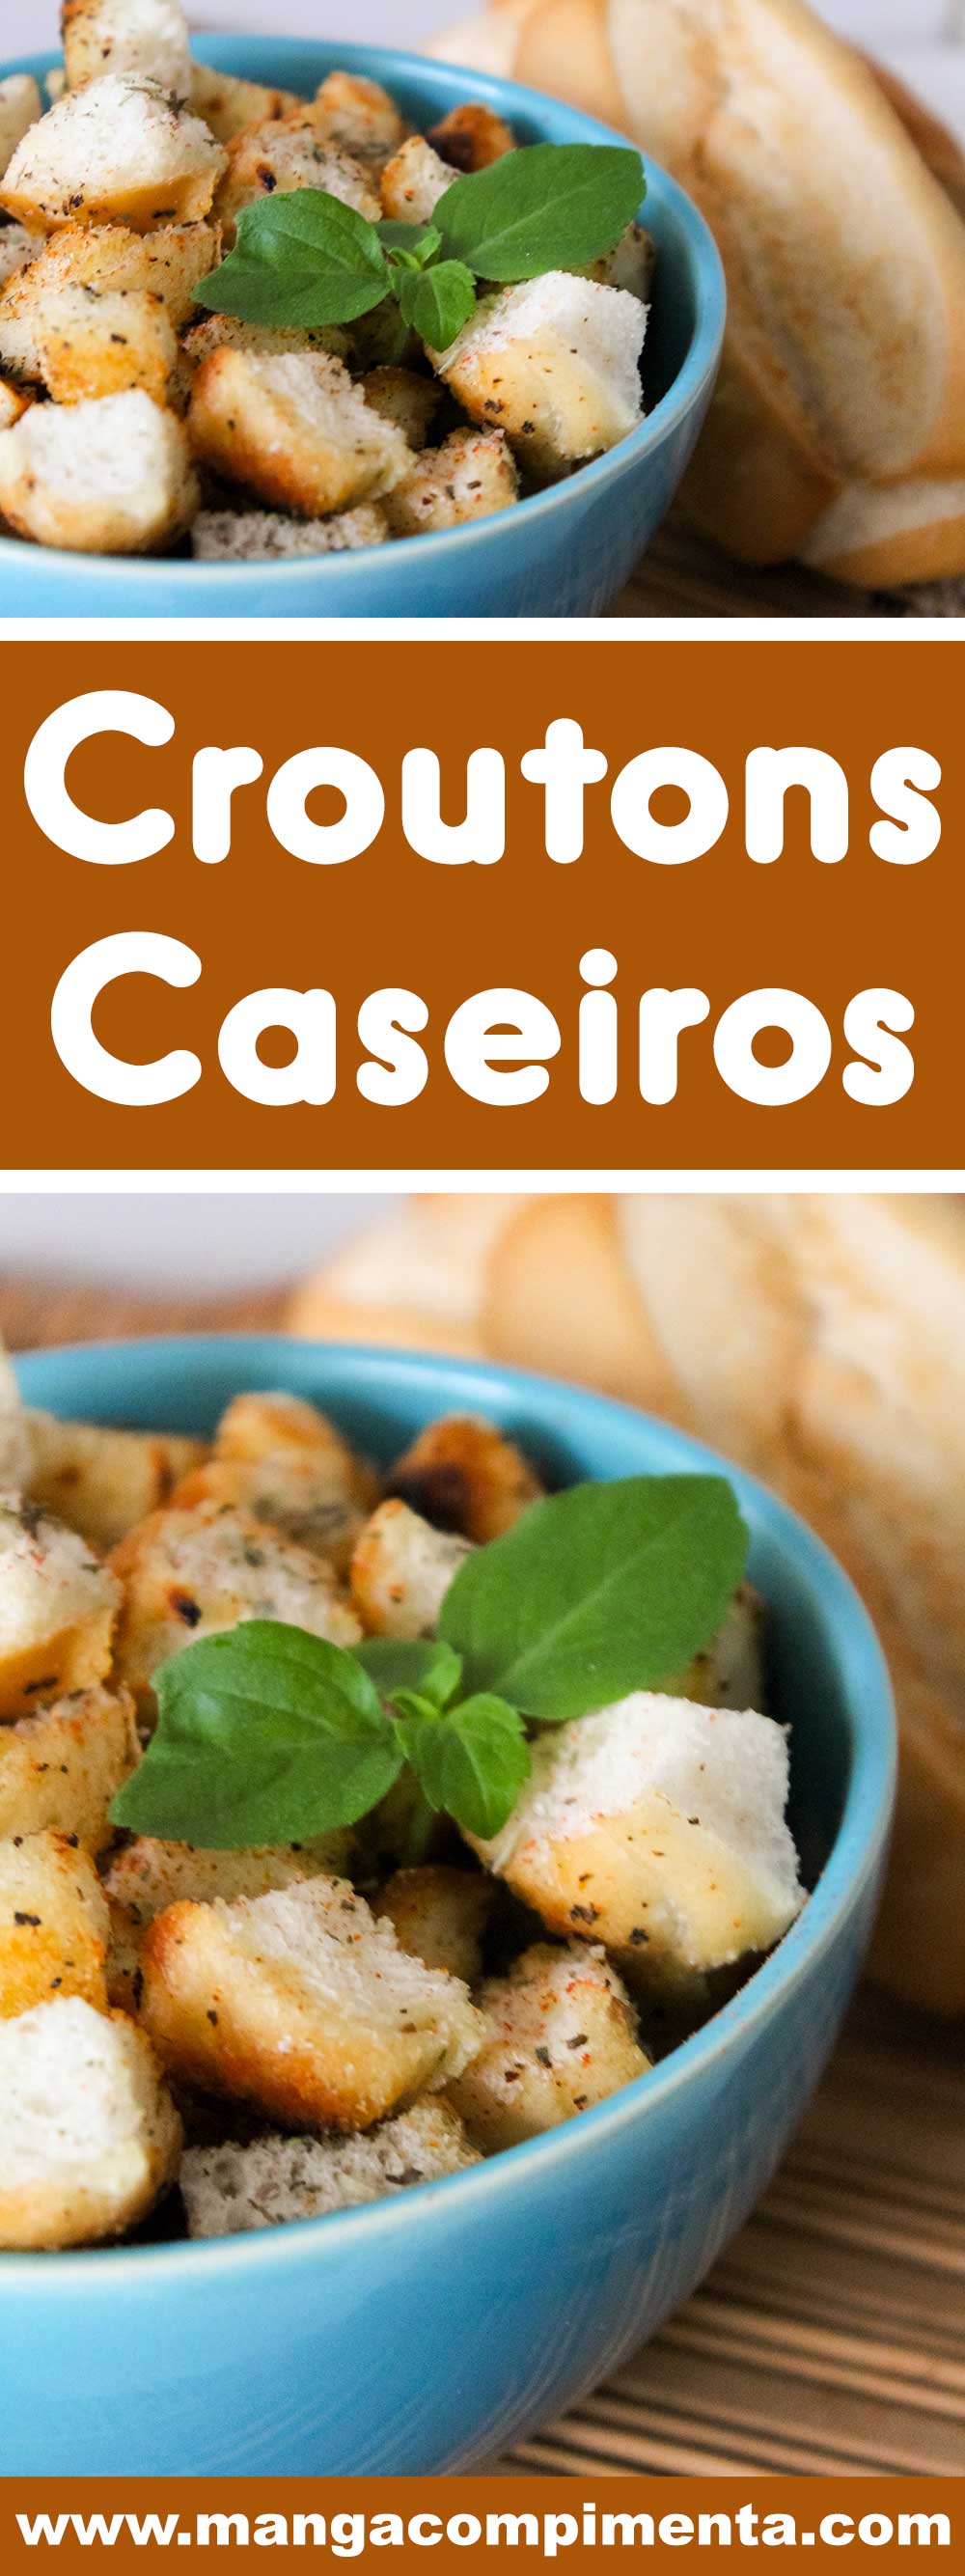 Receita de Croutons Caseiros - para colocar nas sopas ou em saladas ou servir como petiscos.